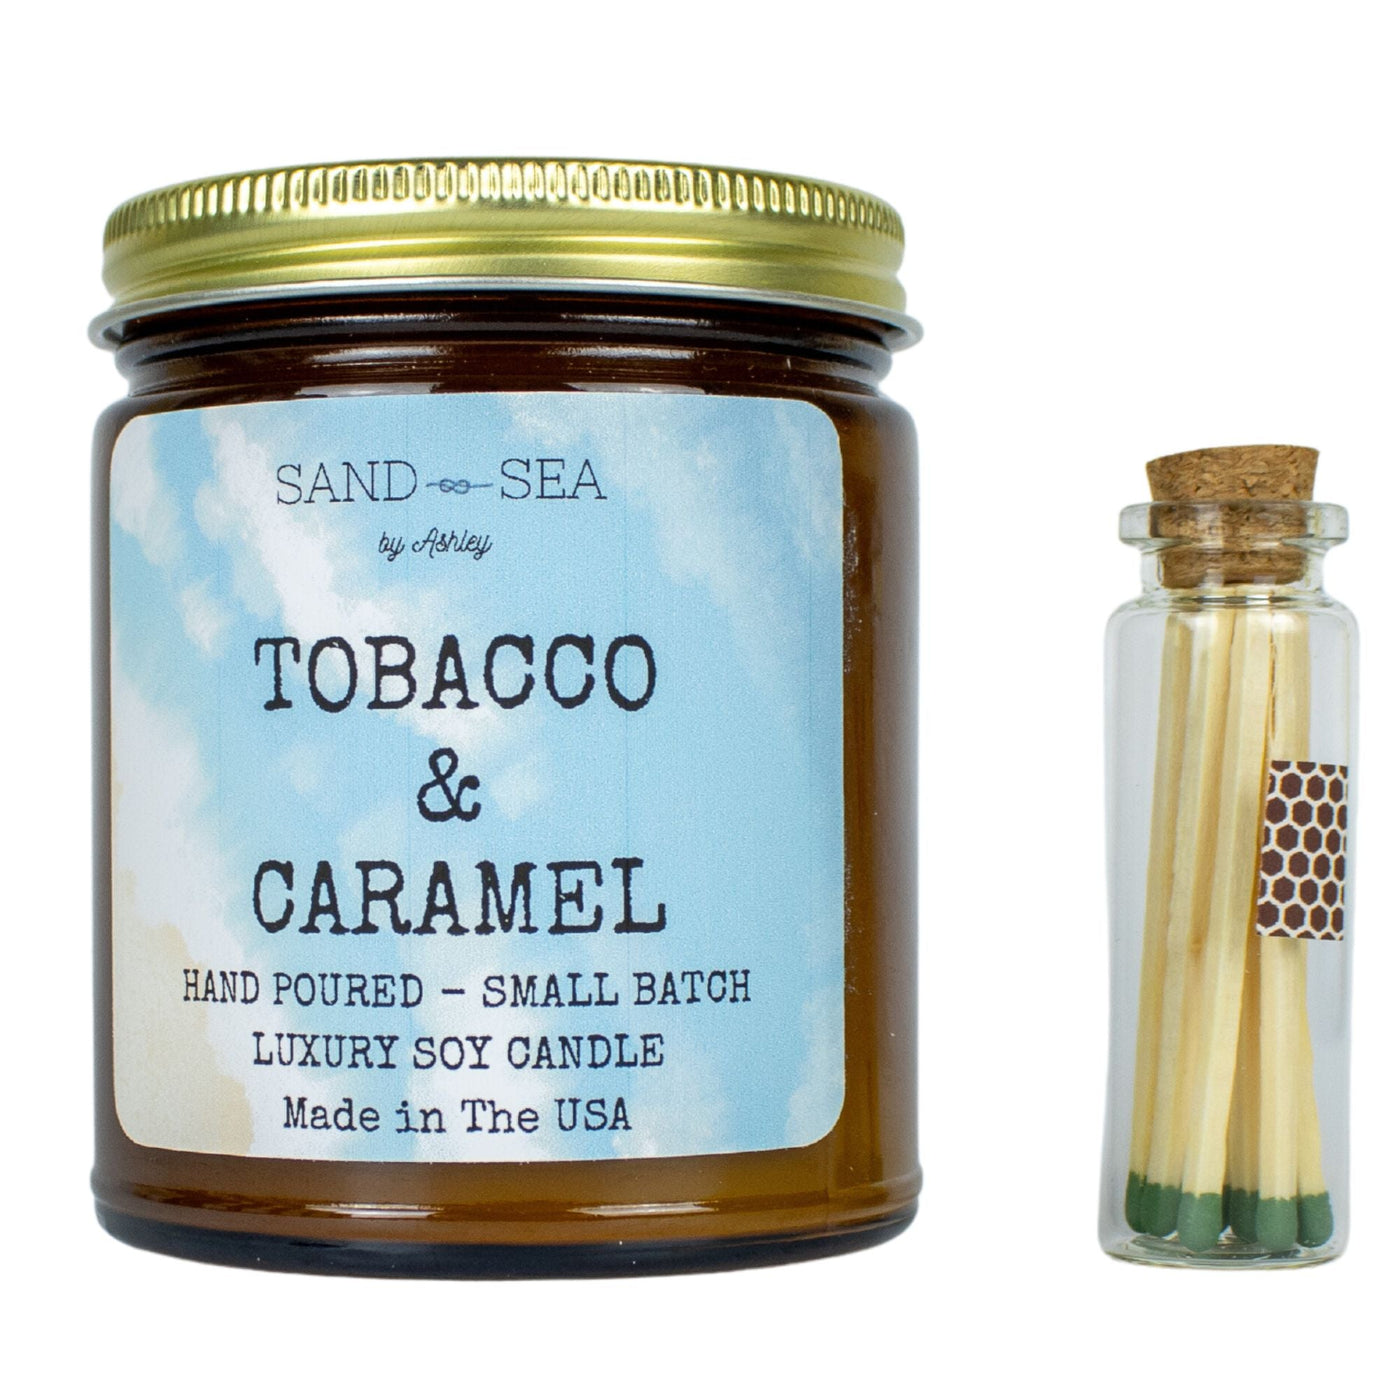 Tobacco Caramel - Handmade Soy Candle 8 oz - Sand & Sea by Ashley